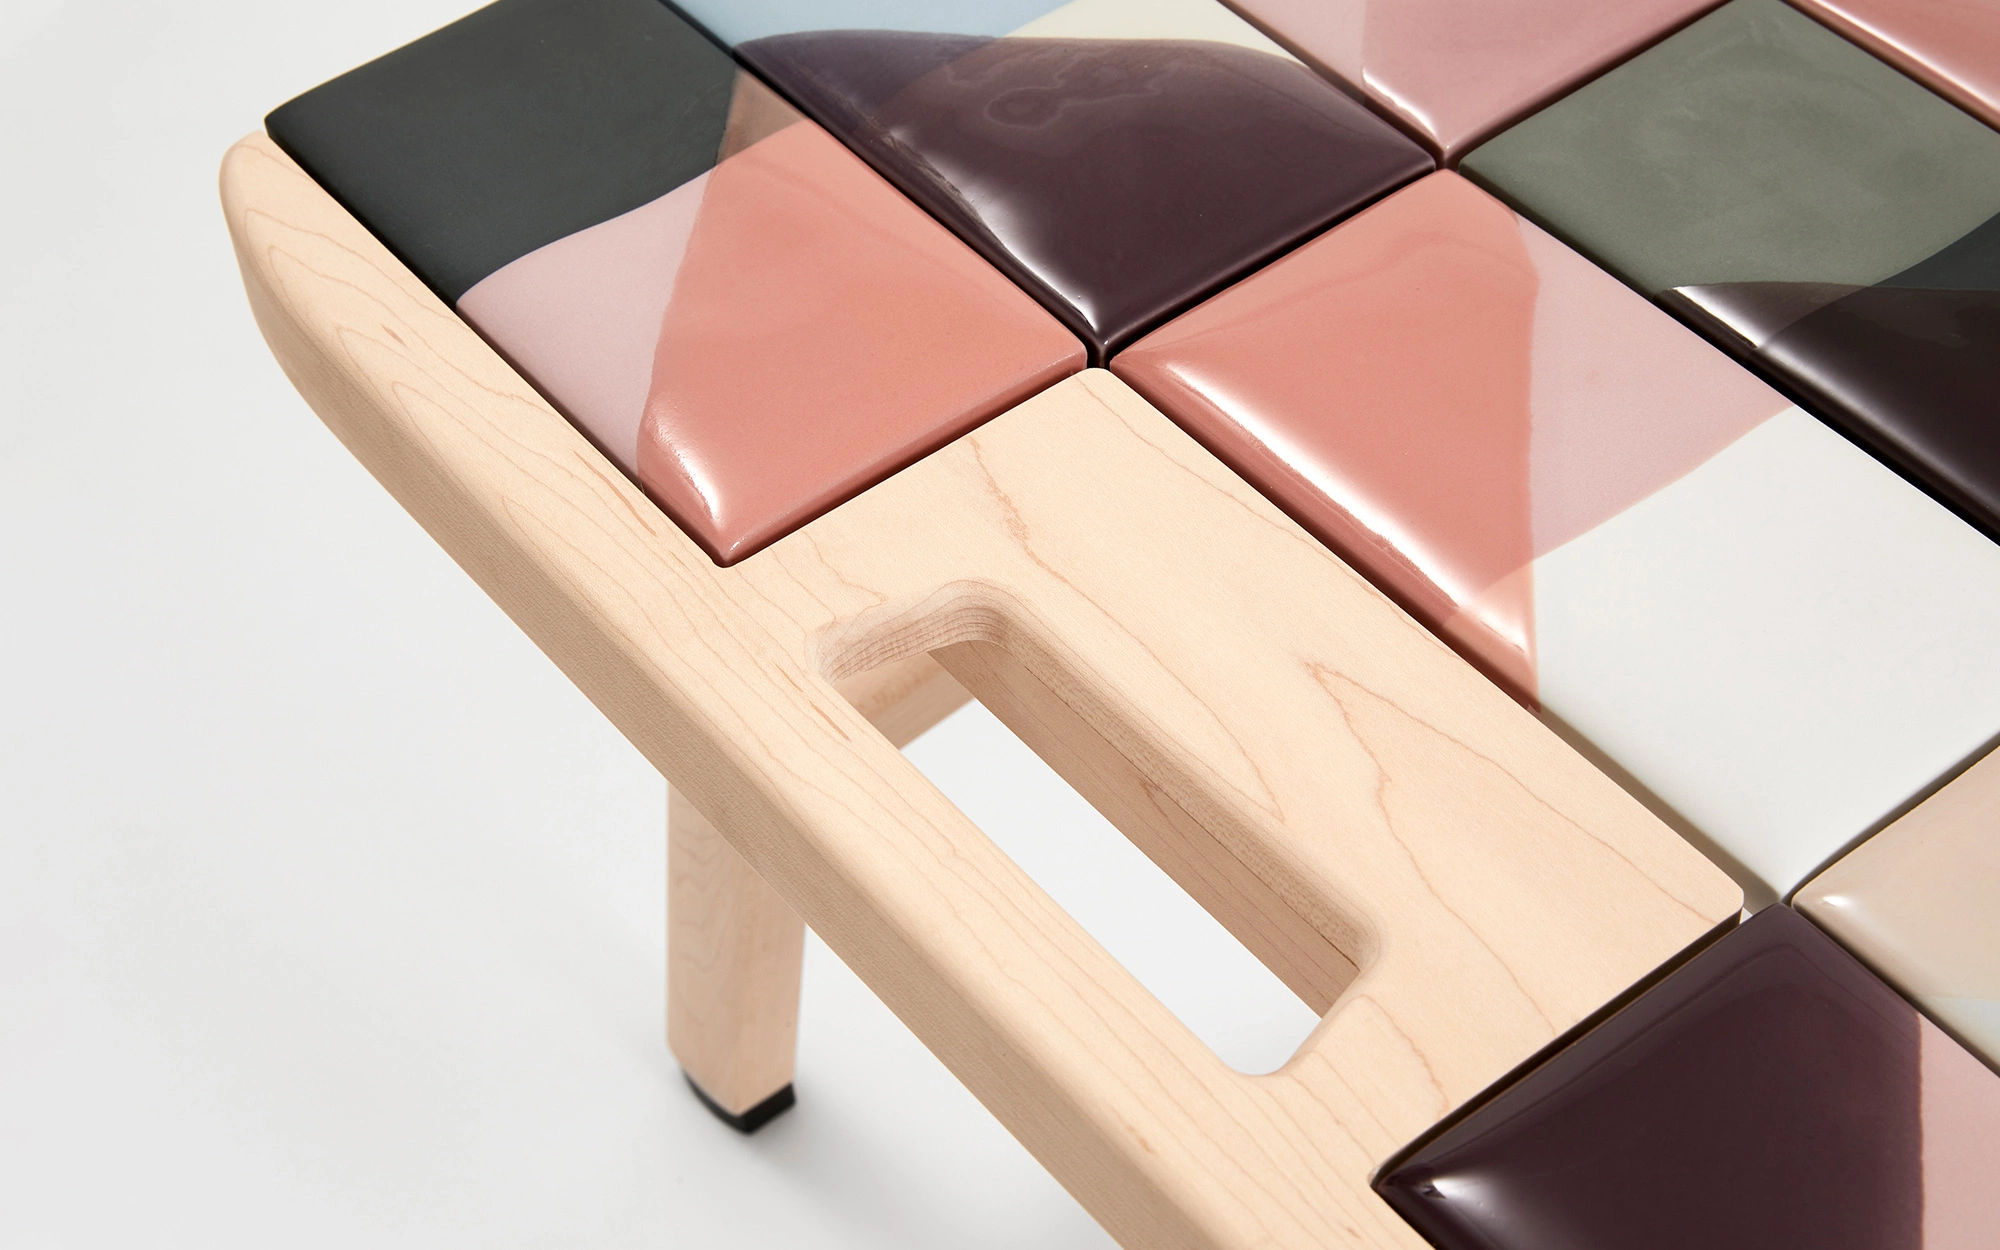 Tiles coffee table - Hella Jongerius - Coffee table - Galerie kreo